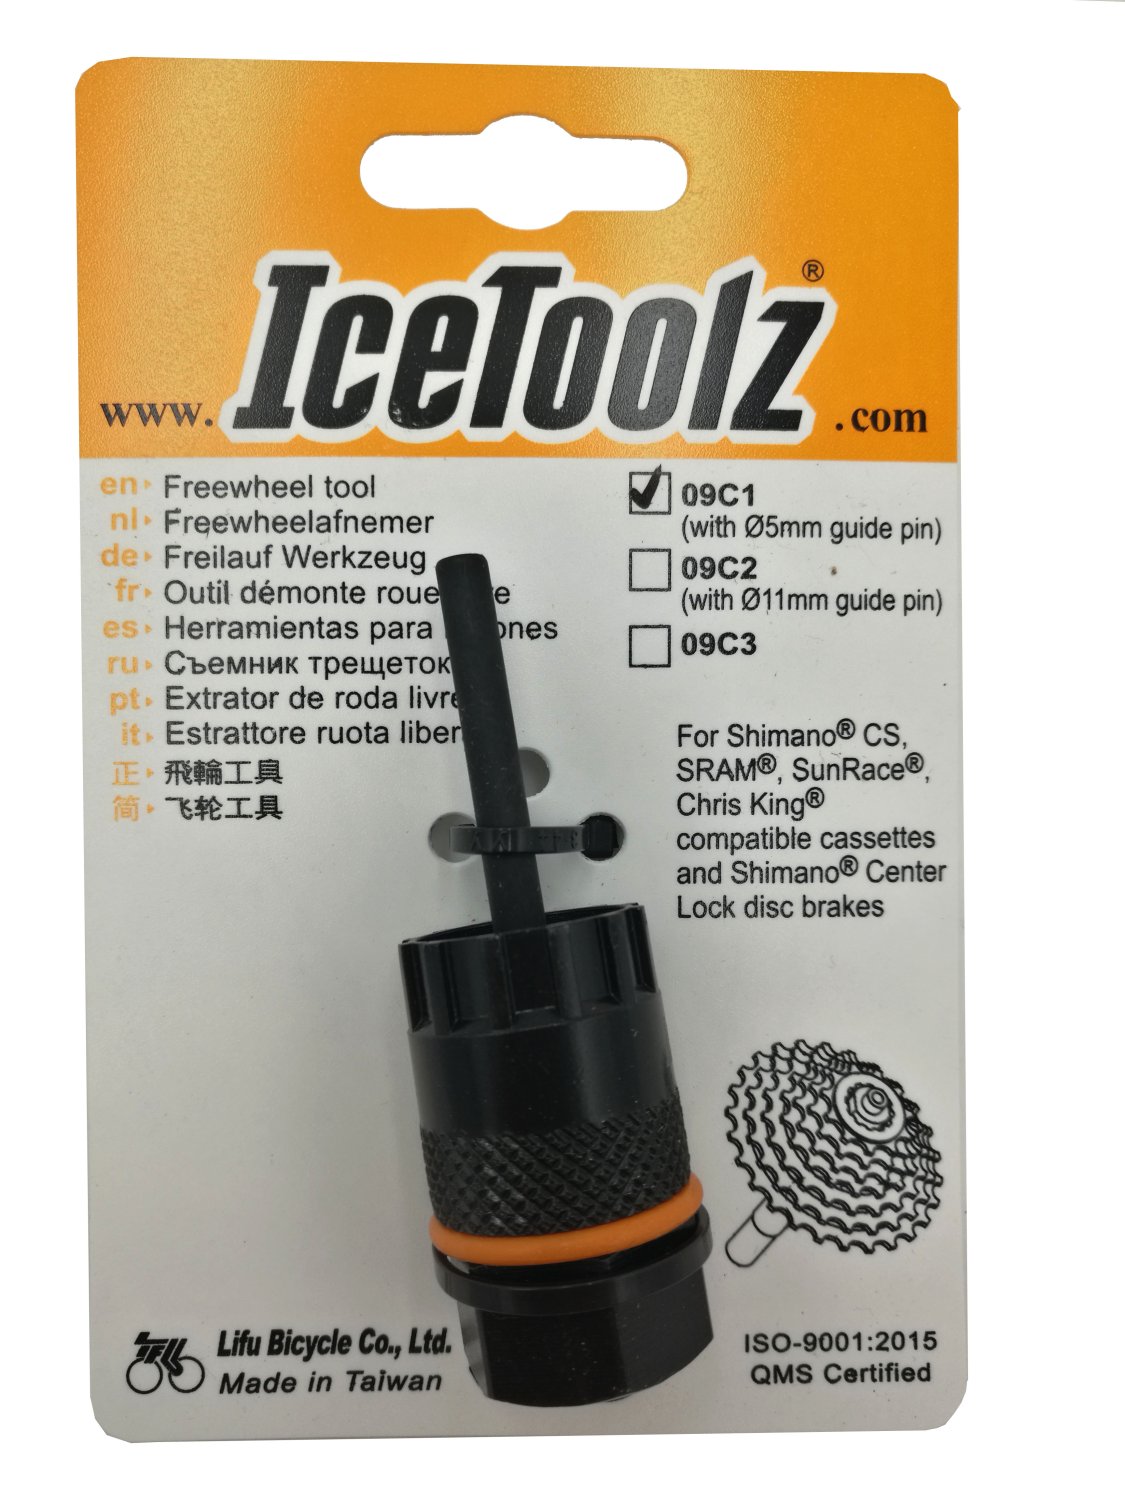 Съемник для кассет ICE TOOLZ Shimano CS/Center Lock, с направляющей , Сr-V сталь, 09C1 съемник шатуна с ключом на 14